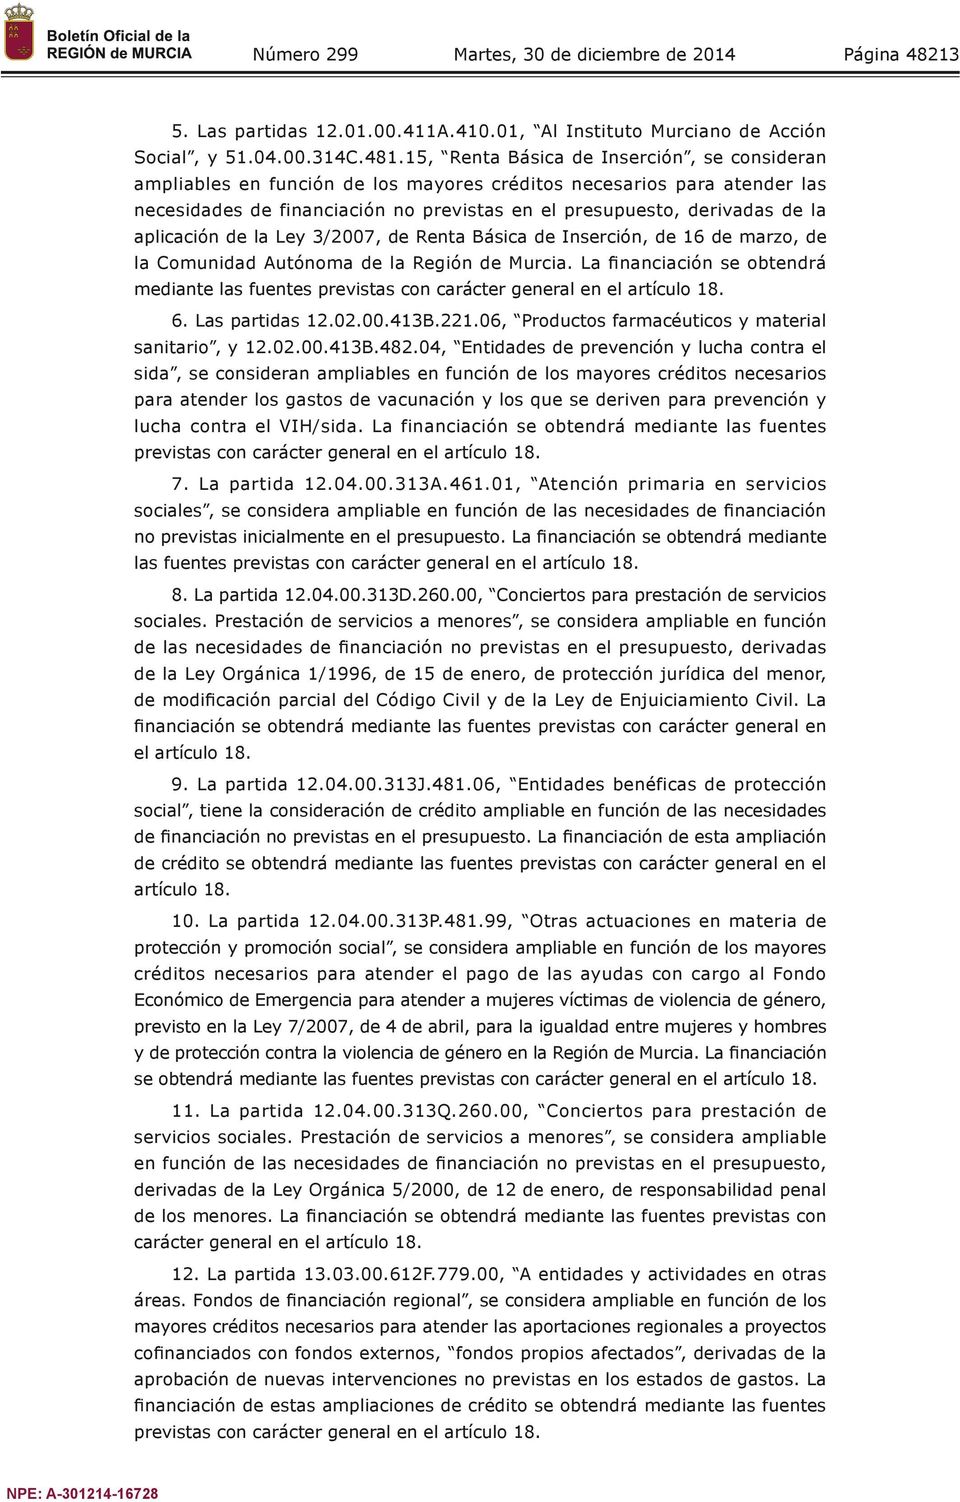 aplicación de la Ley 3/2007, de Renta Básica de Inserción, de 16 de marzo, de la Comunidad Autónoma de la Región de Murcia.